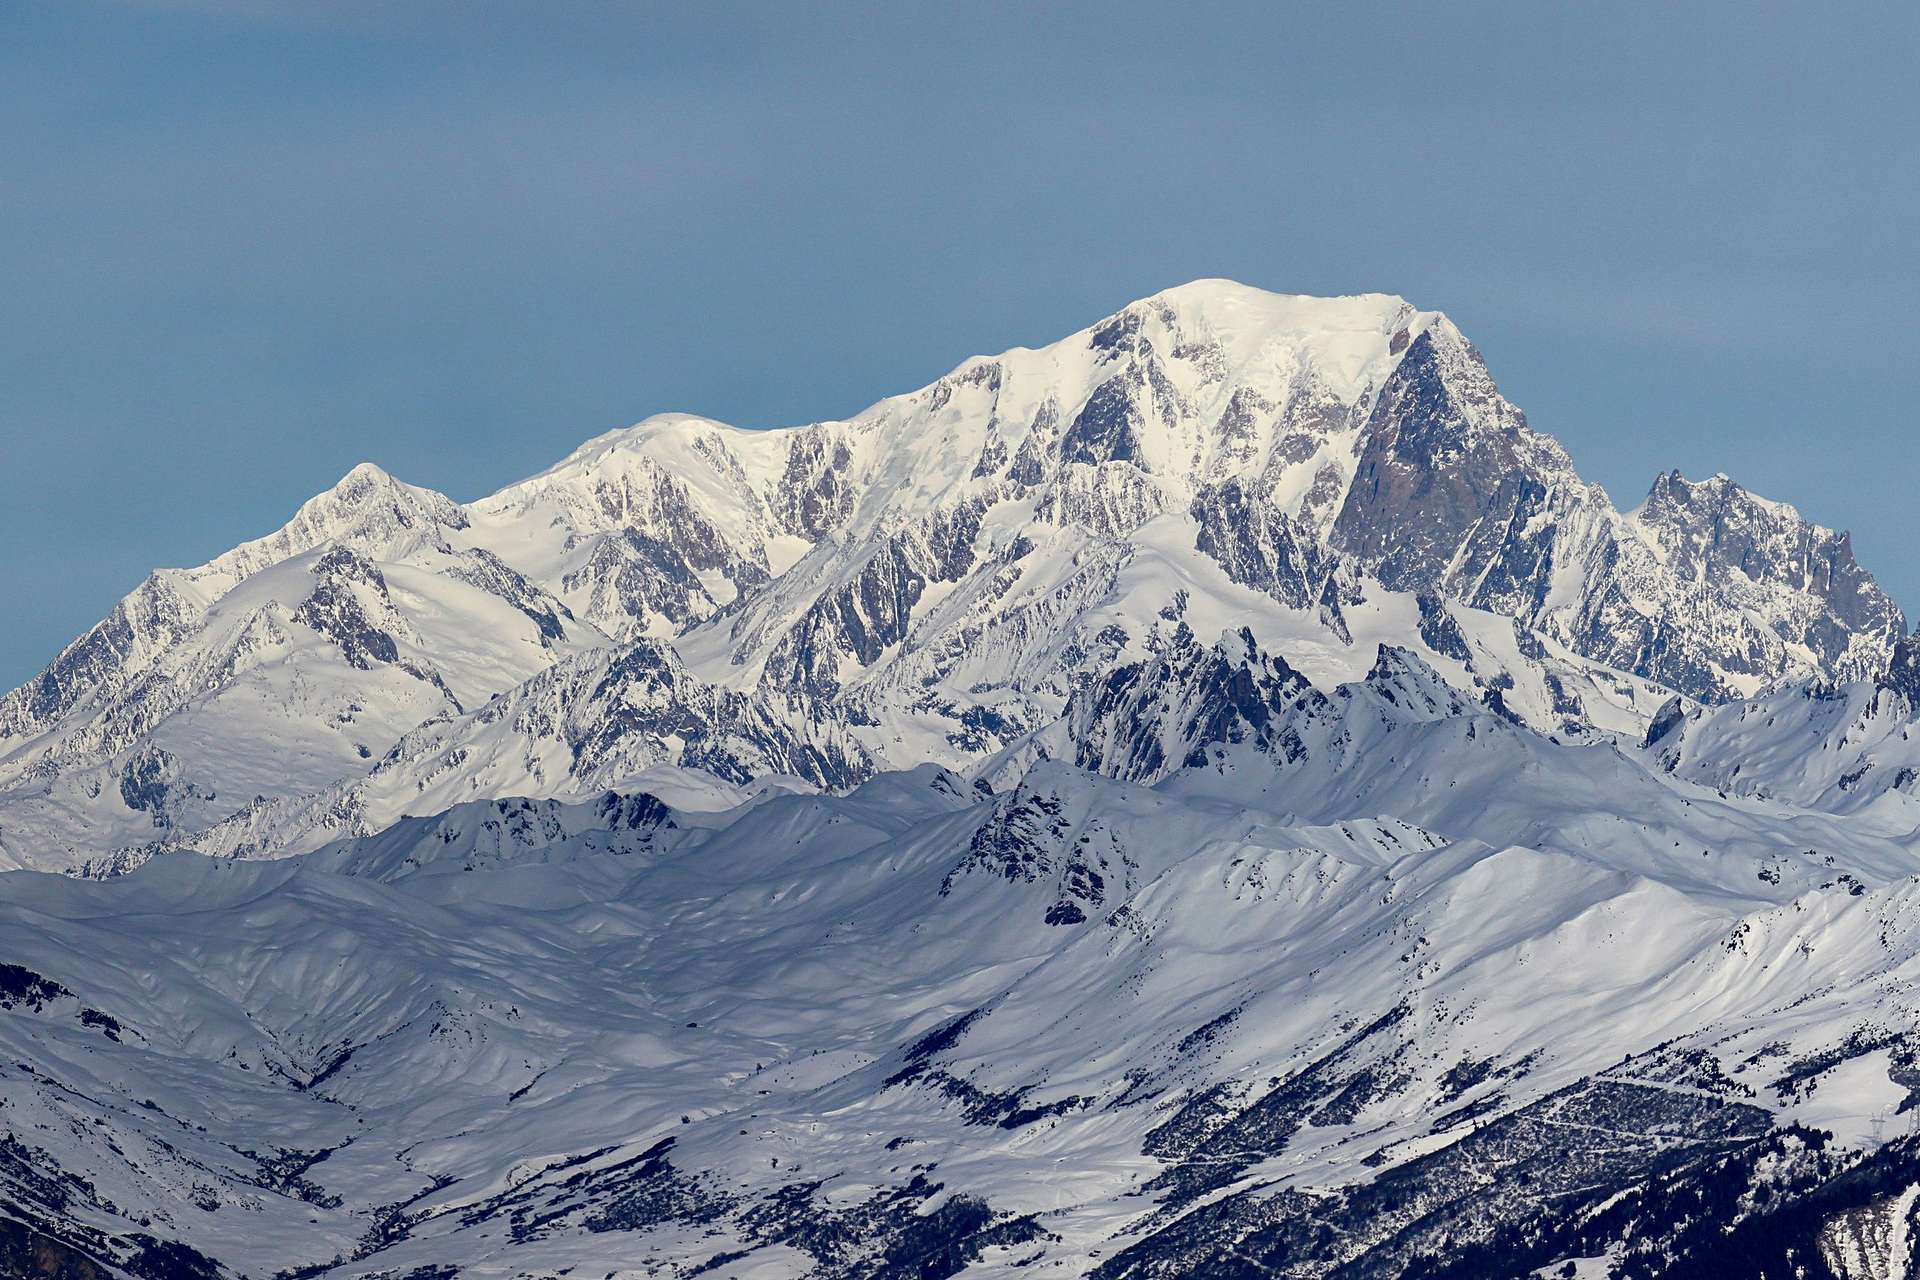 Peut-on concilier ski et respect de la biodiversité en montagne ?